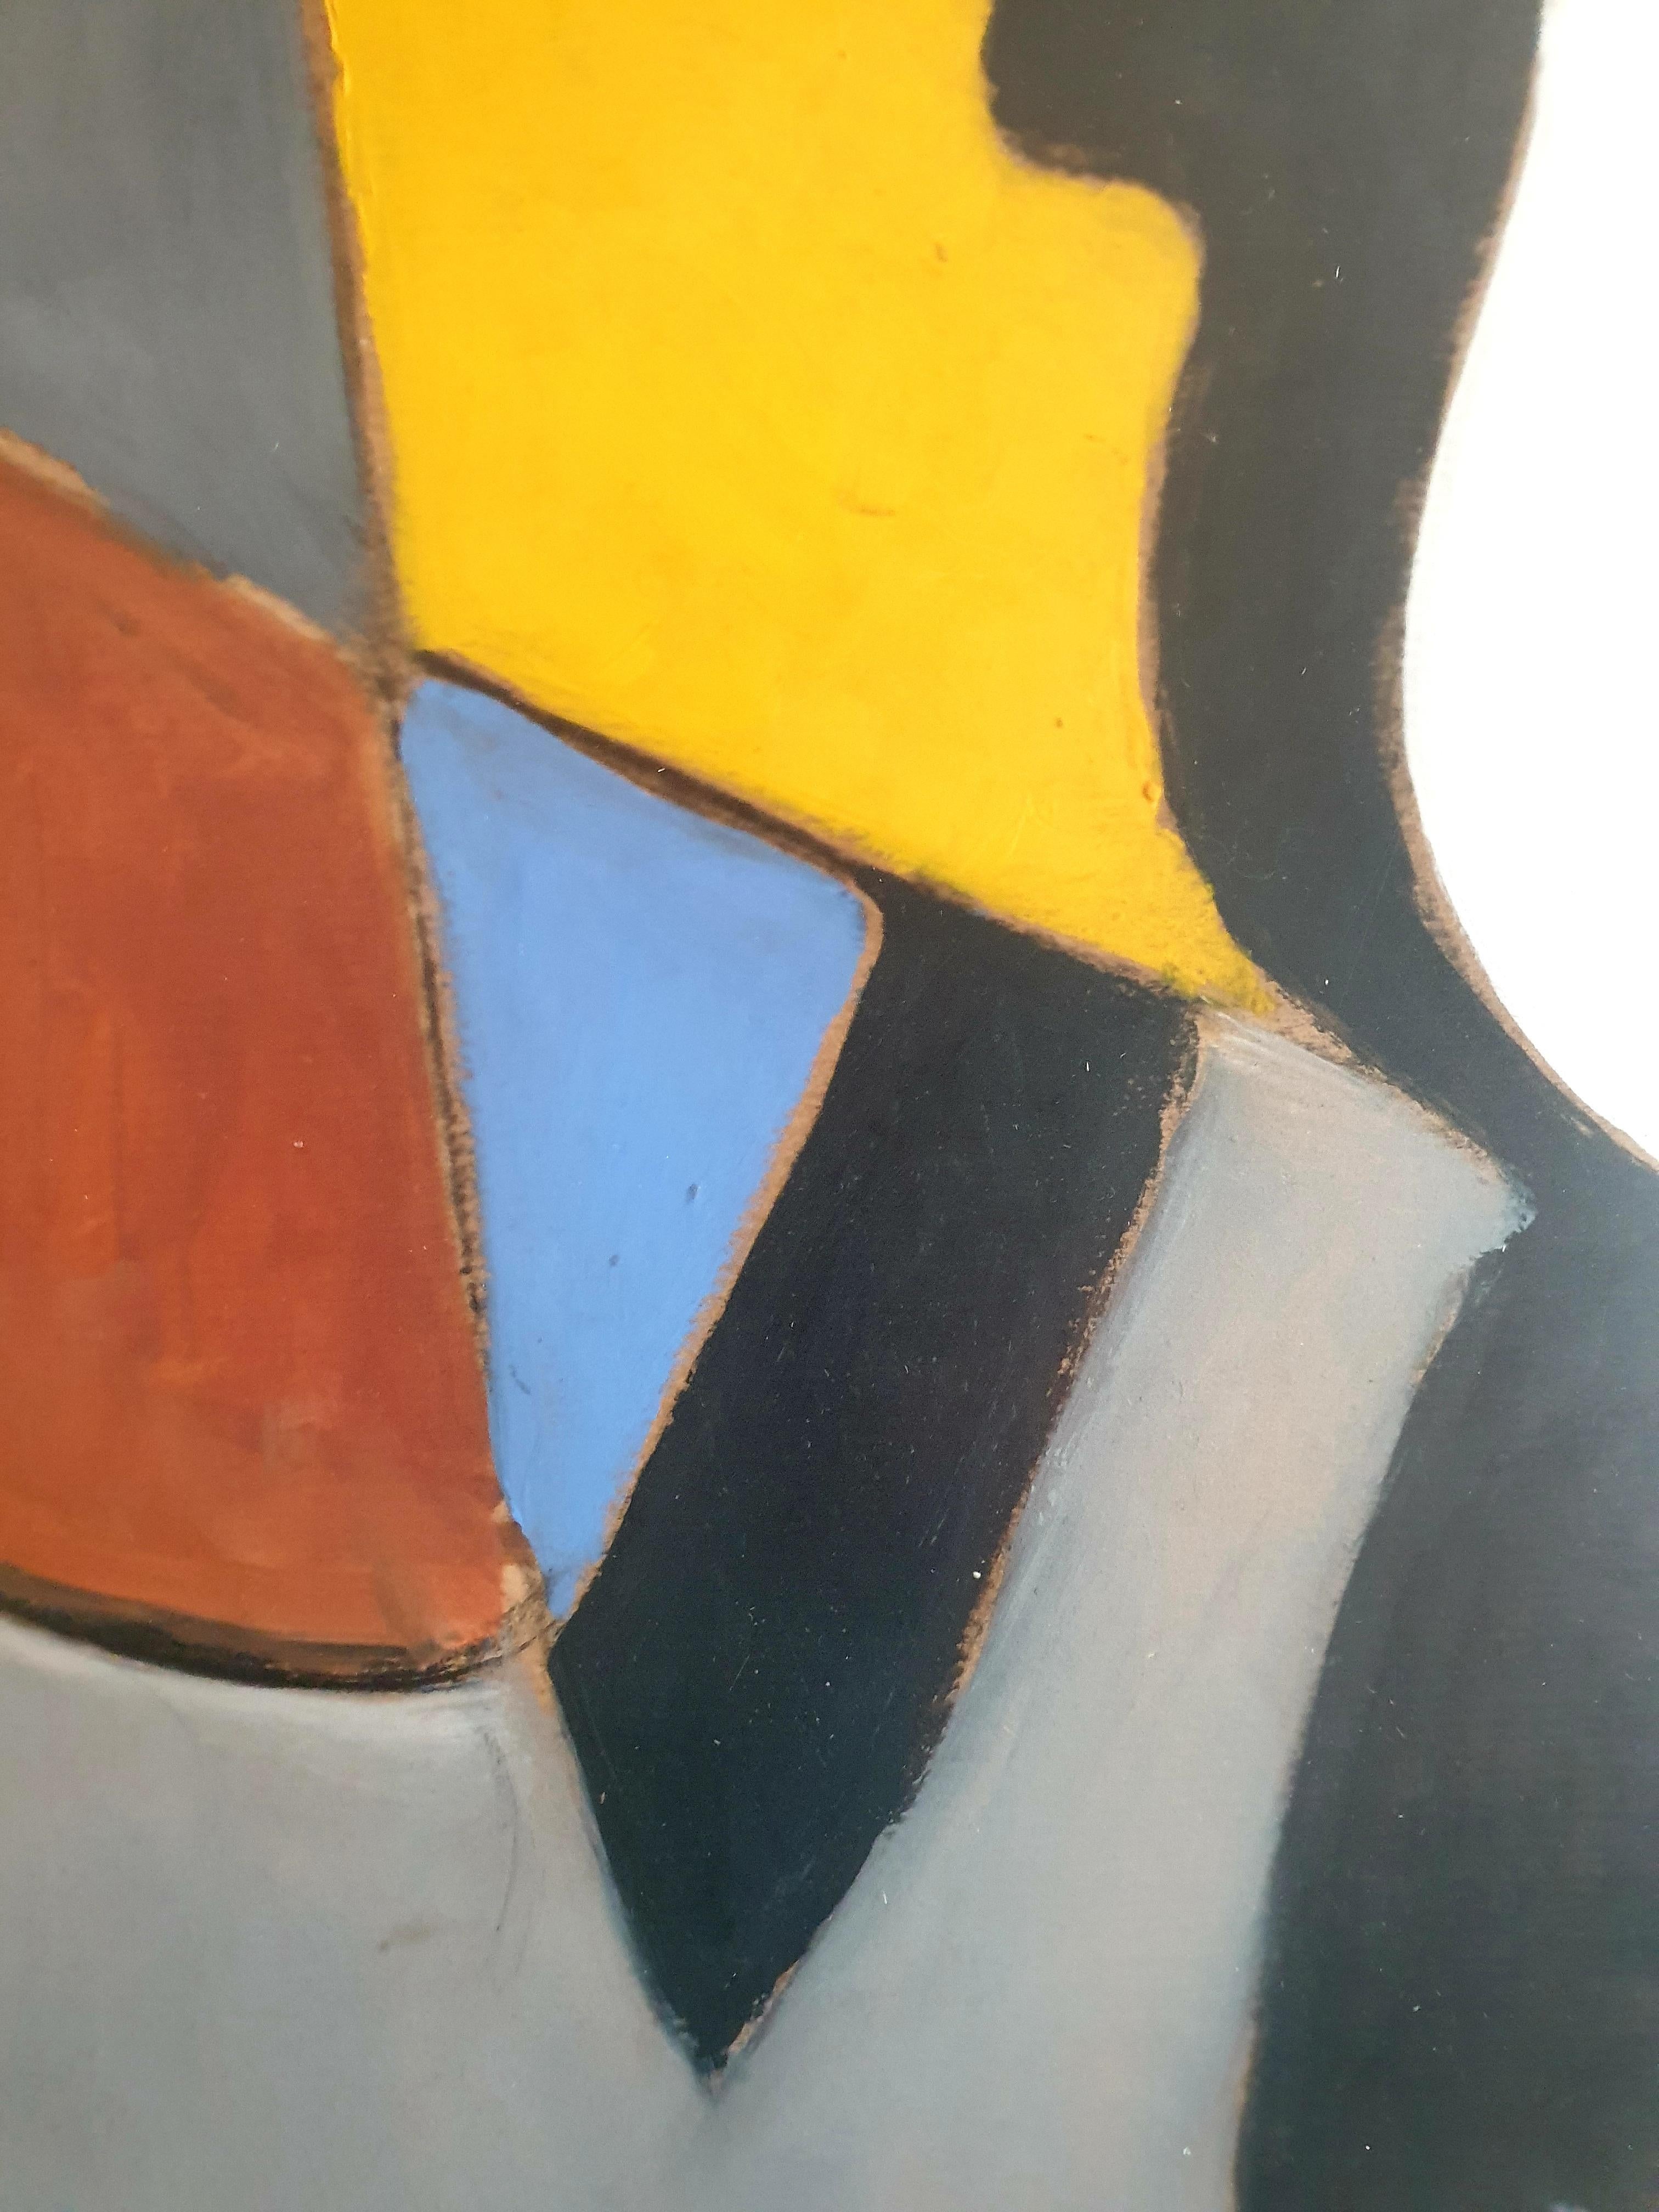 Große abstrakte Tachiste in Acryl auf Papier, inspiriert von den Gemälden von Serge Poliakoff. Das Gemälde befindet sich in einem schlichten, geformten Rahmen unter Plexiglas.

Ein sehr farbenfrohes und energiegeladenes abstraktes Gemälde im Stil